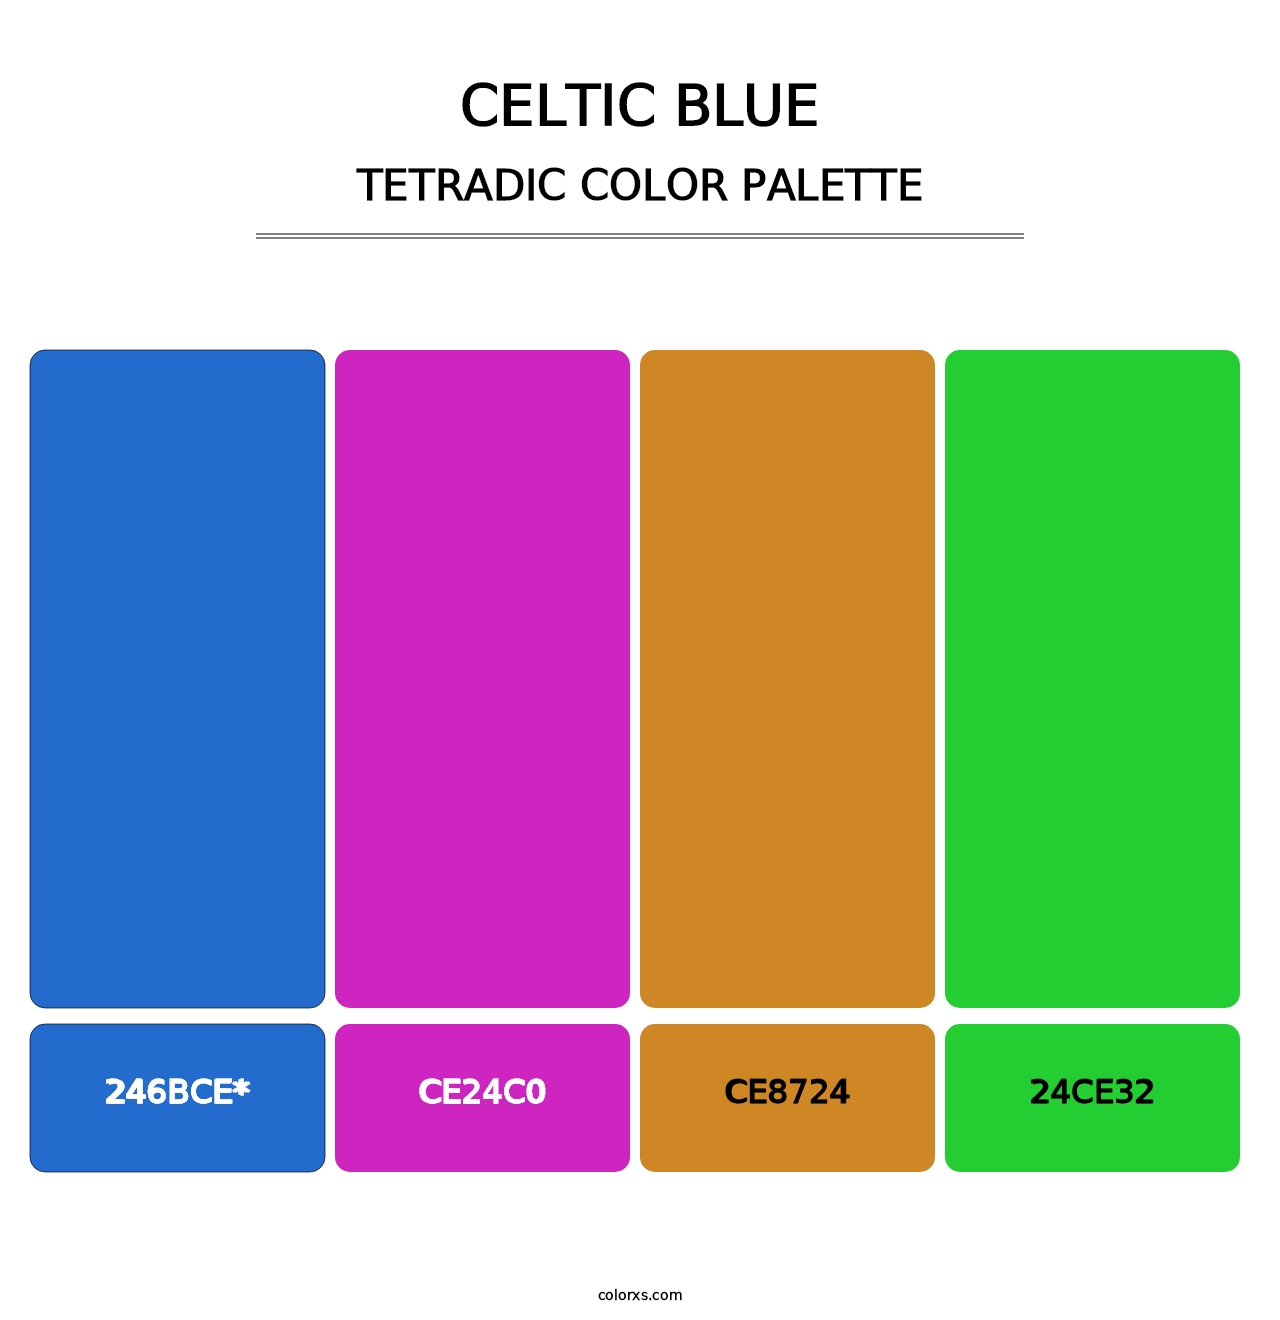 Celtic Blue - Tetradic Color Palette